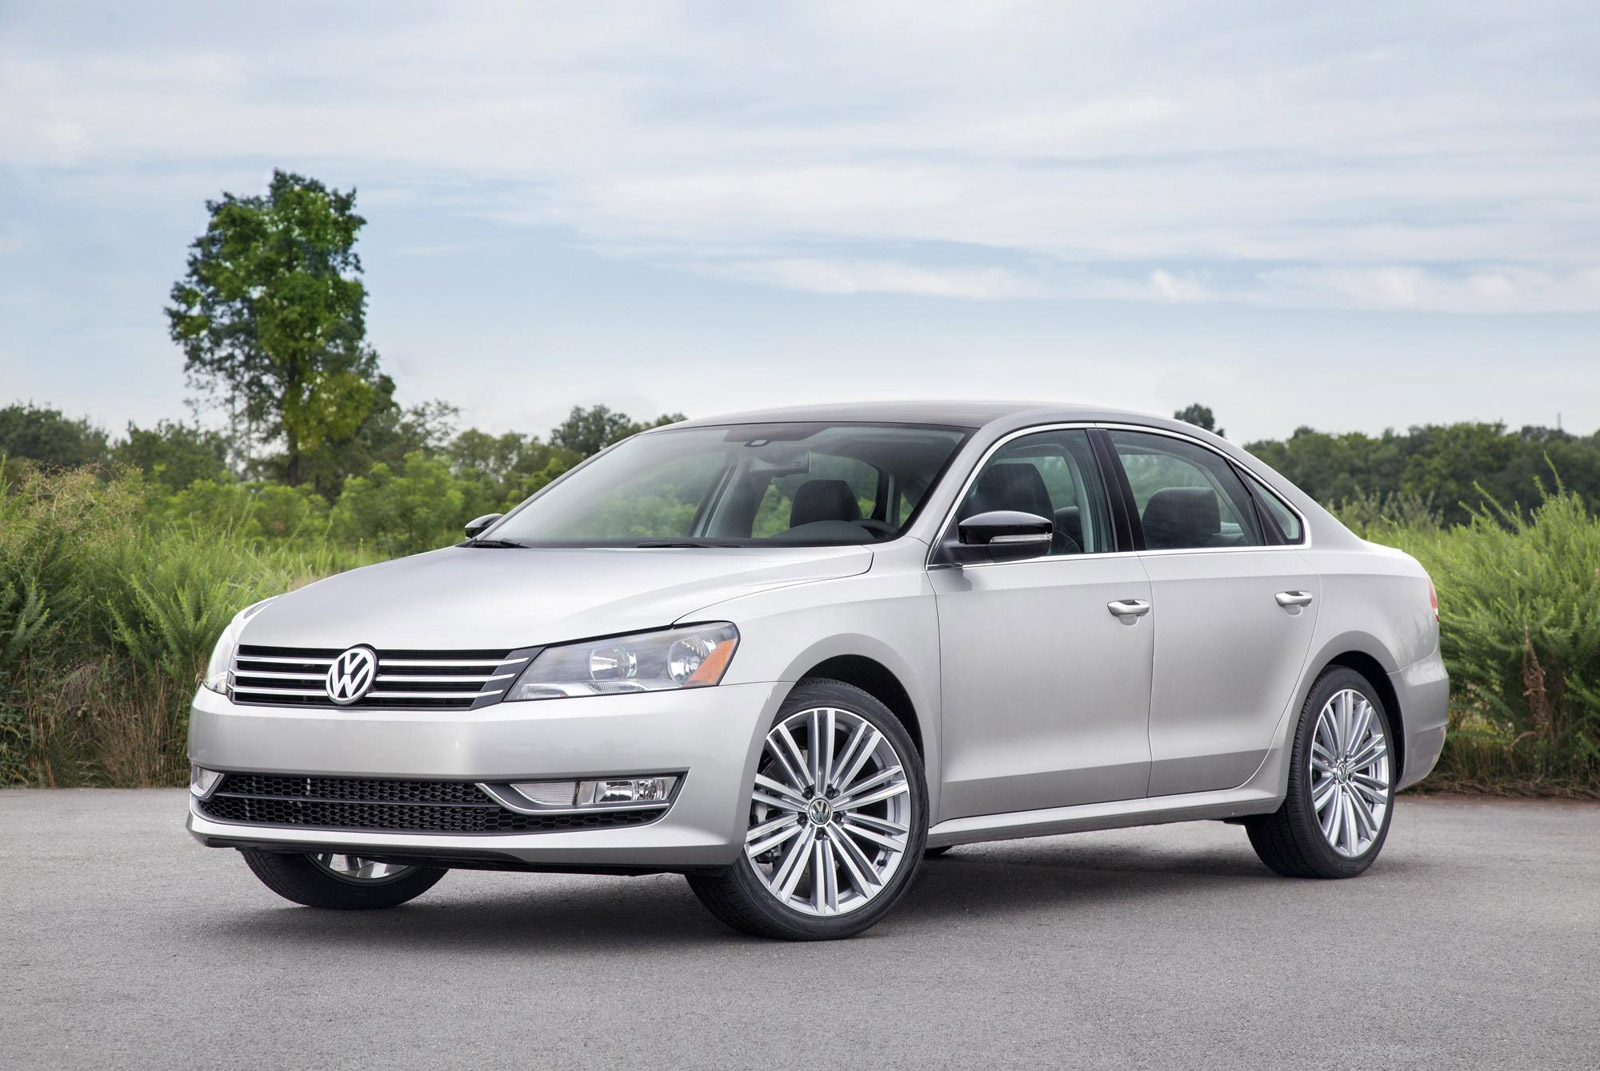 Volkswagen Passat Price, Images, Mileage, Reviews, Specs